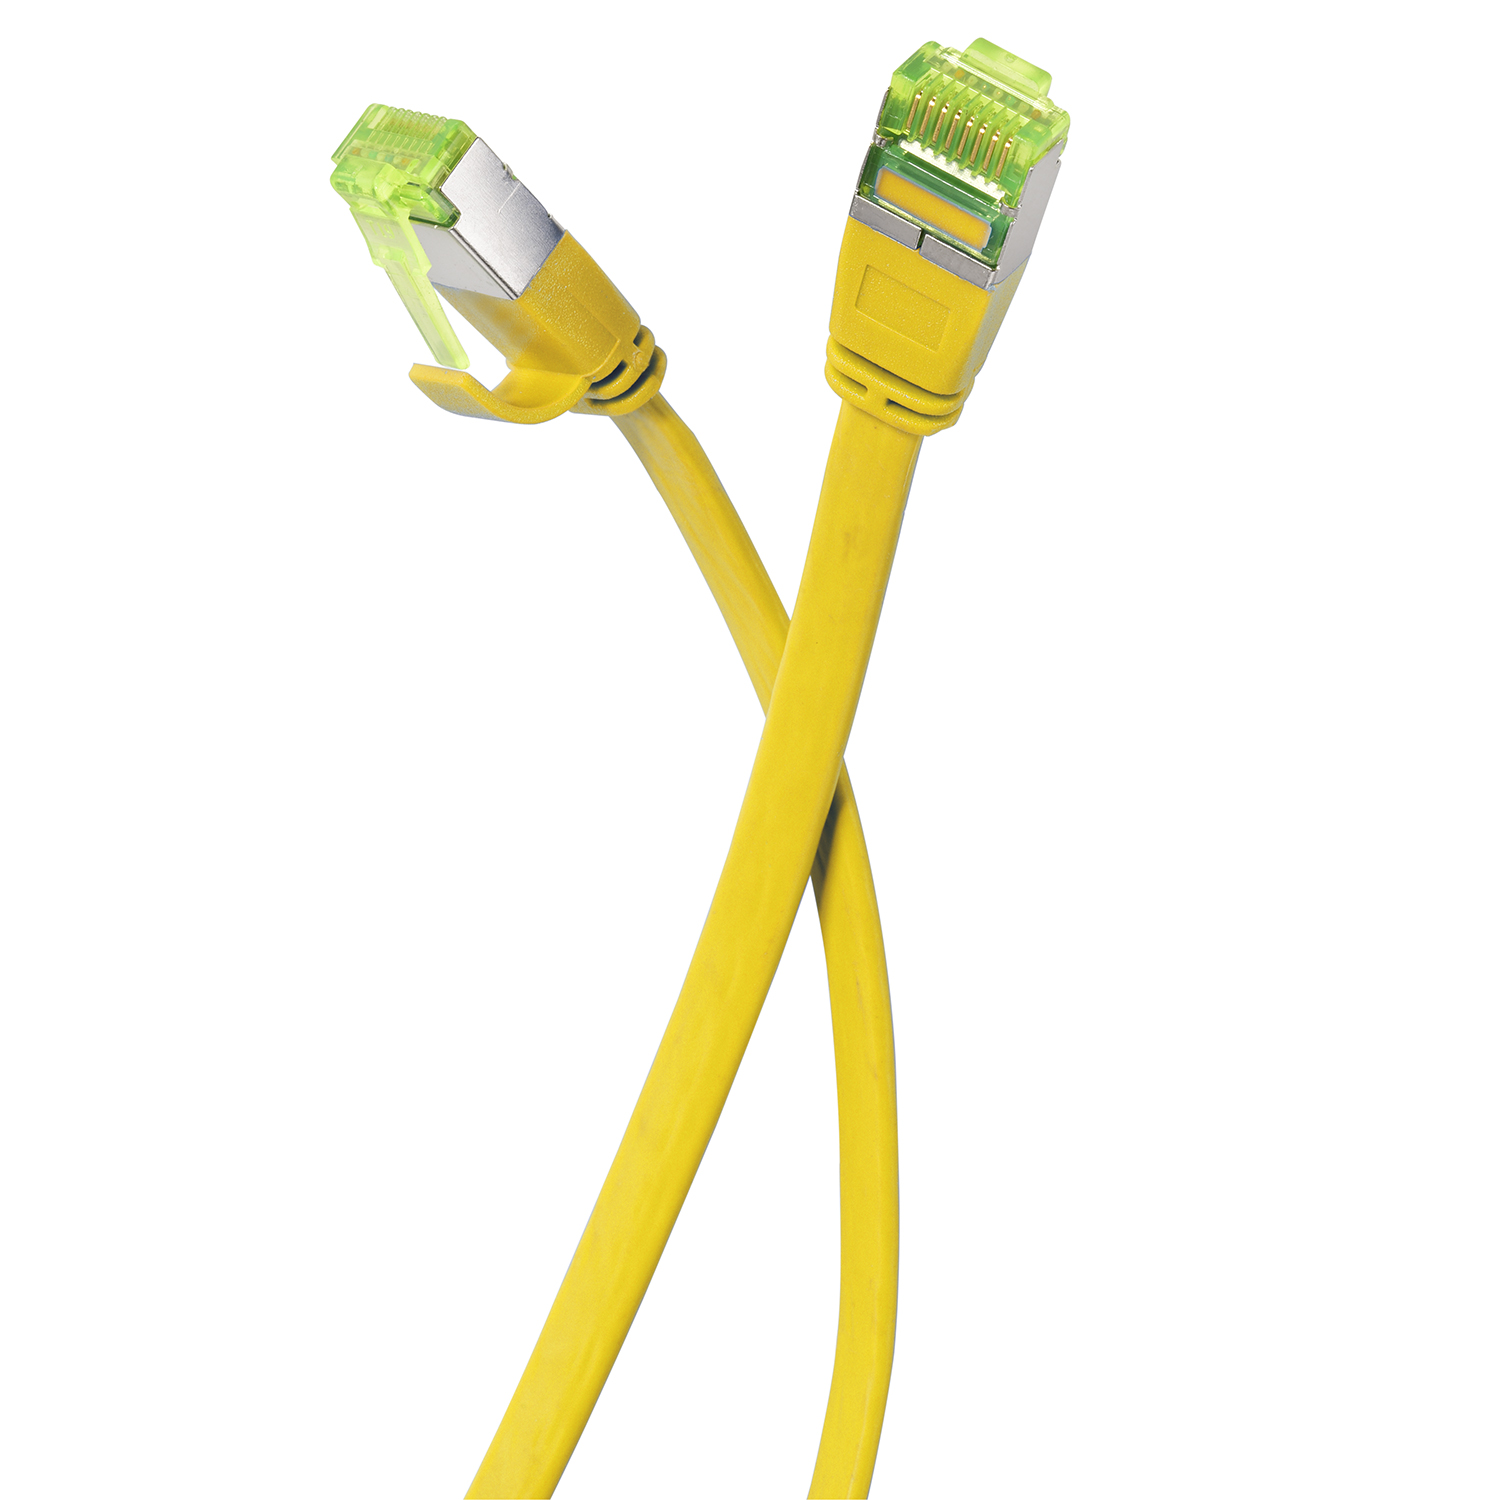 U/FTP m 7,5 gelb, Flachkabel TPFNET 10 Patchkabel / Netzwerkkabel, 7,5m GBit,